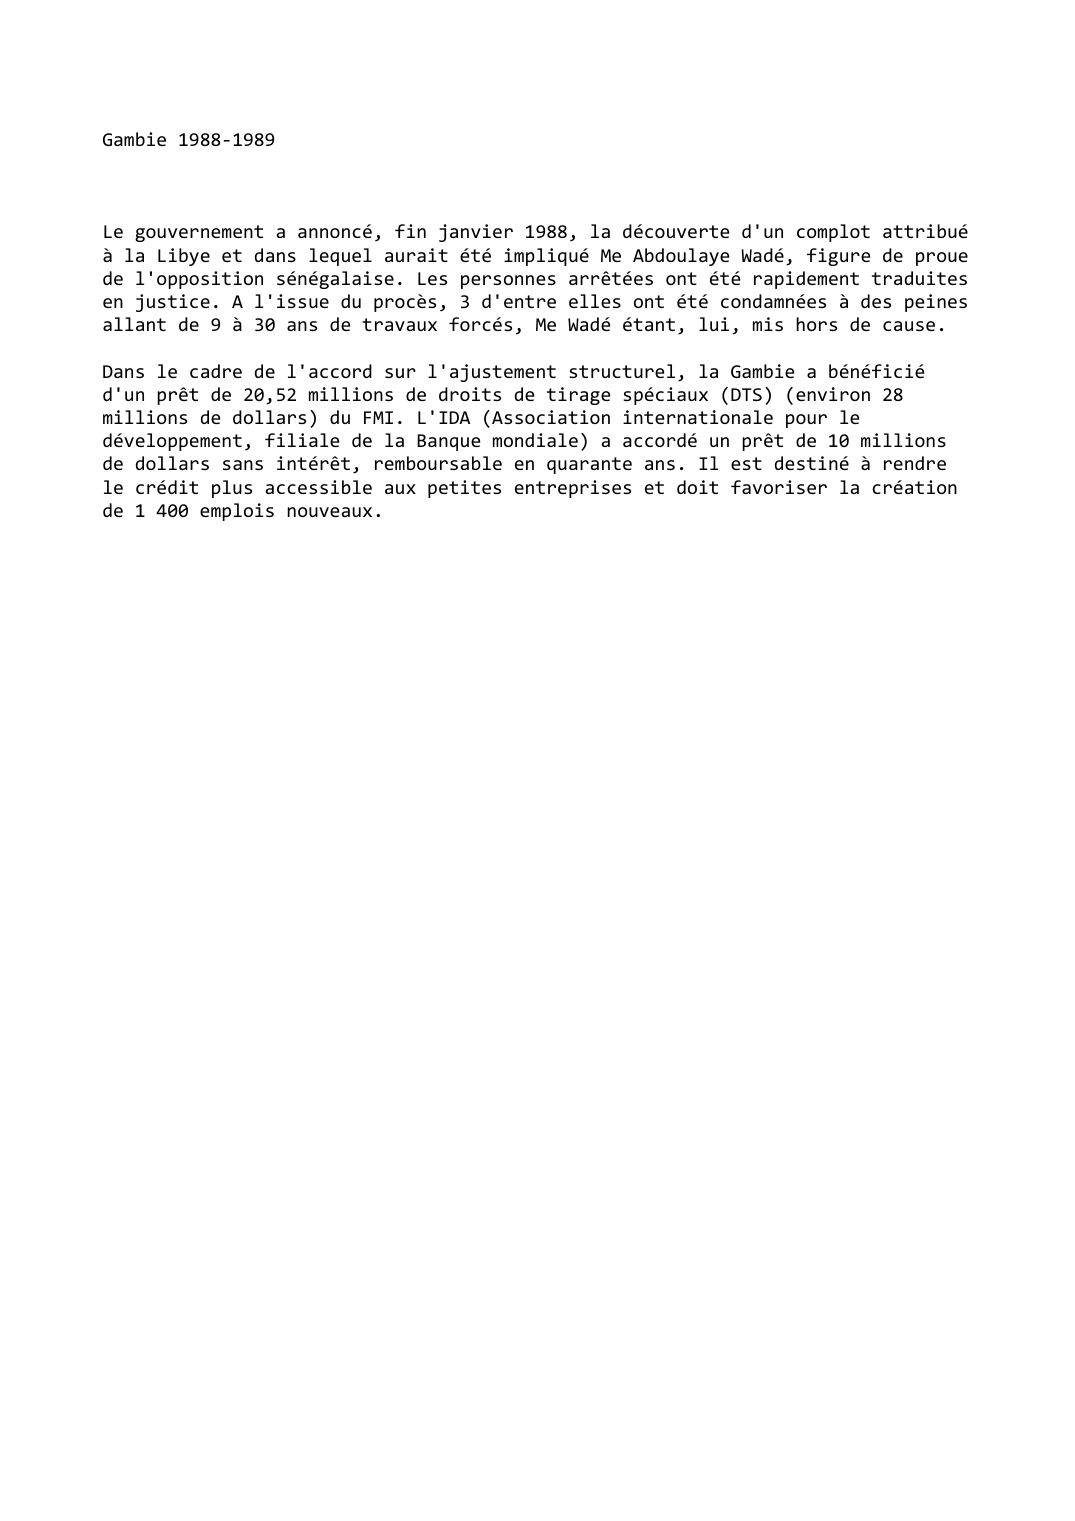 Prévisualisation du document Gambie (1988-1989)